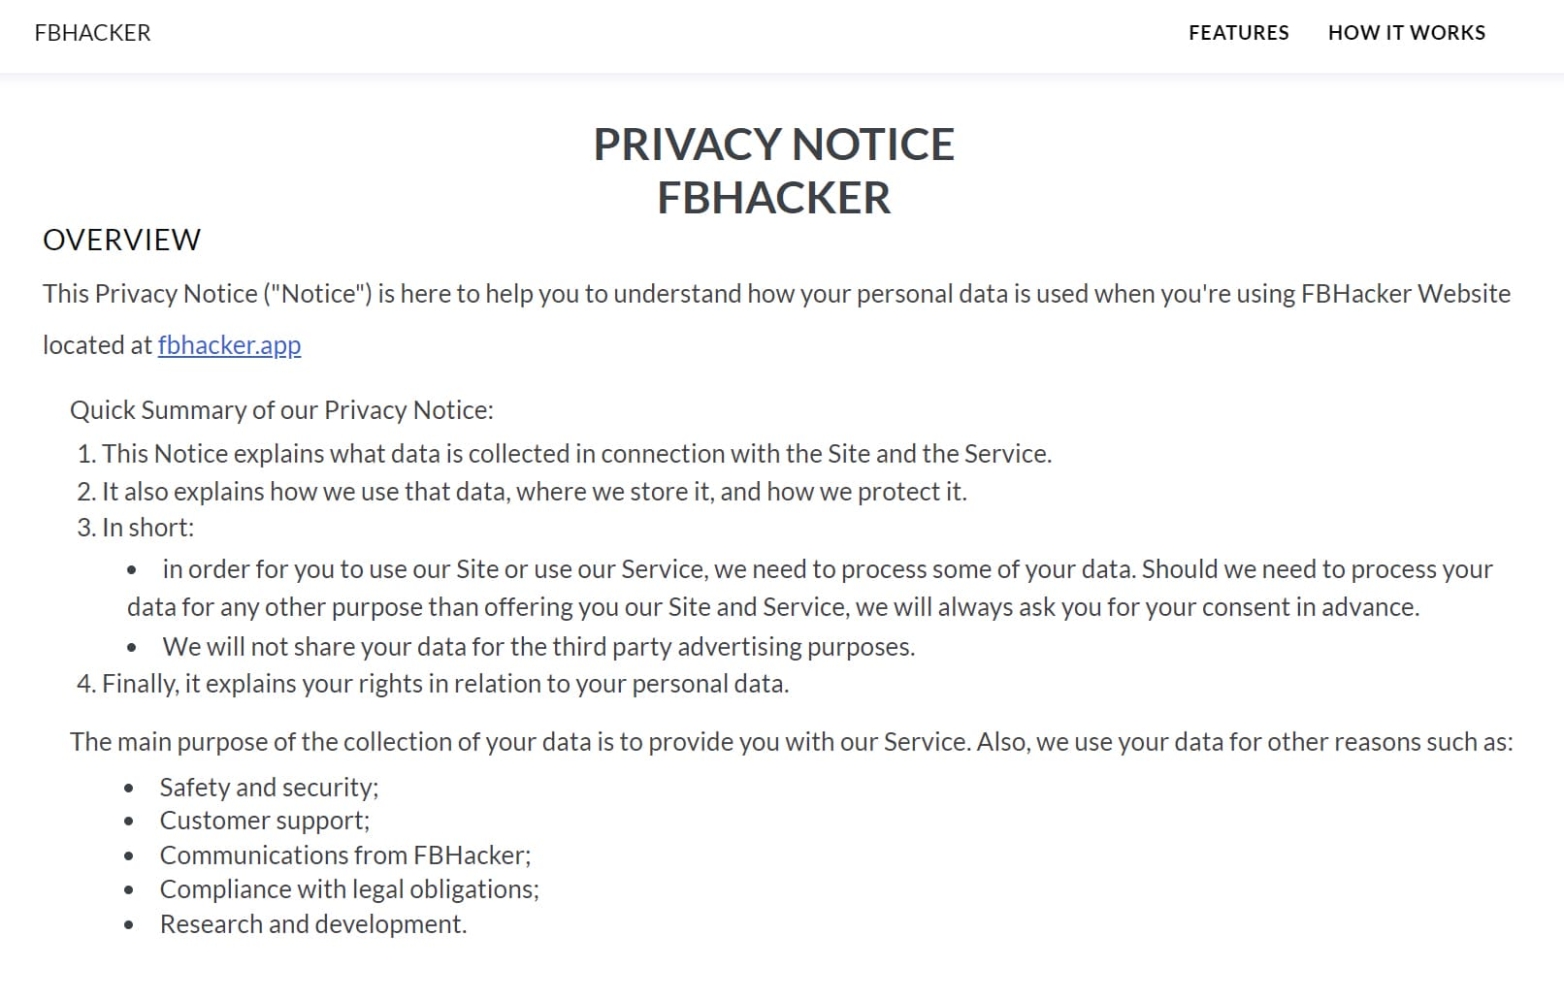 Ansicht auf der FBhacker-Website, wo die Datenschutzbestimmungen beschrieben sind